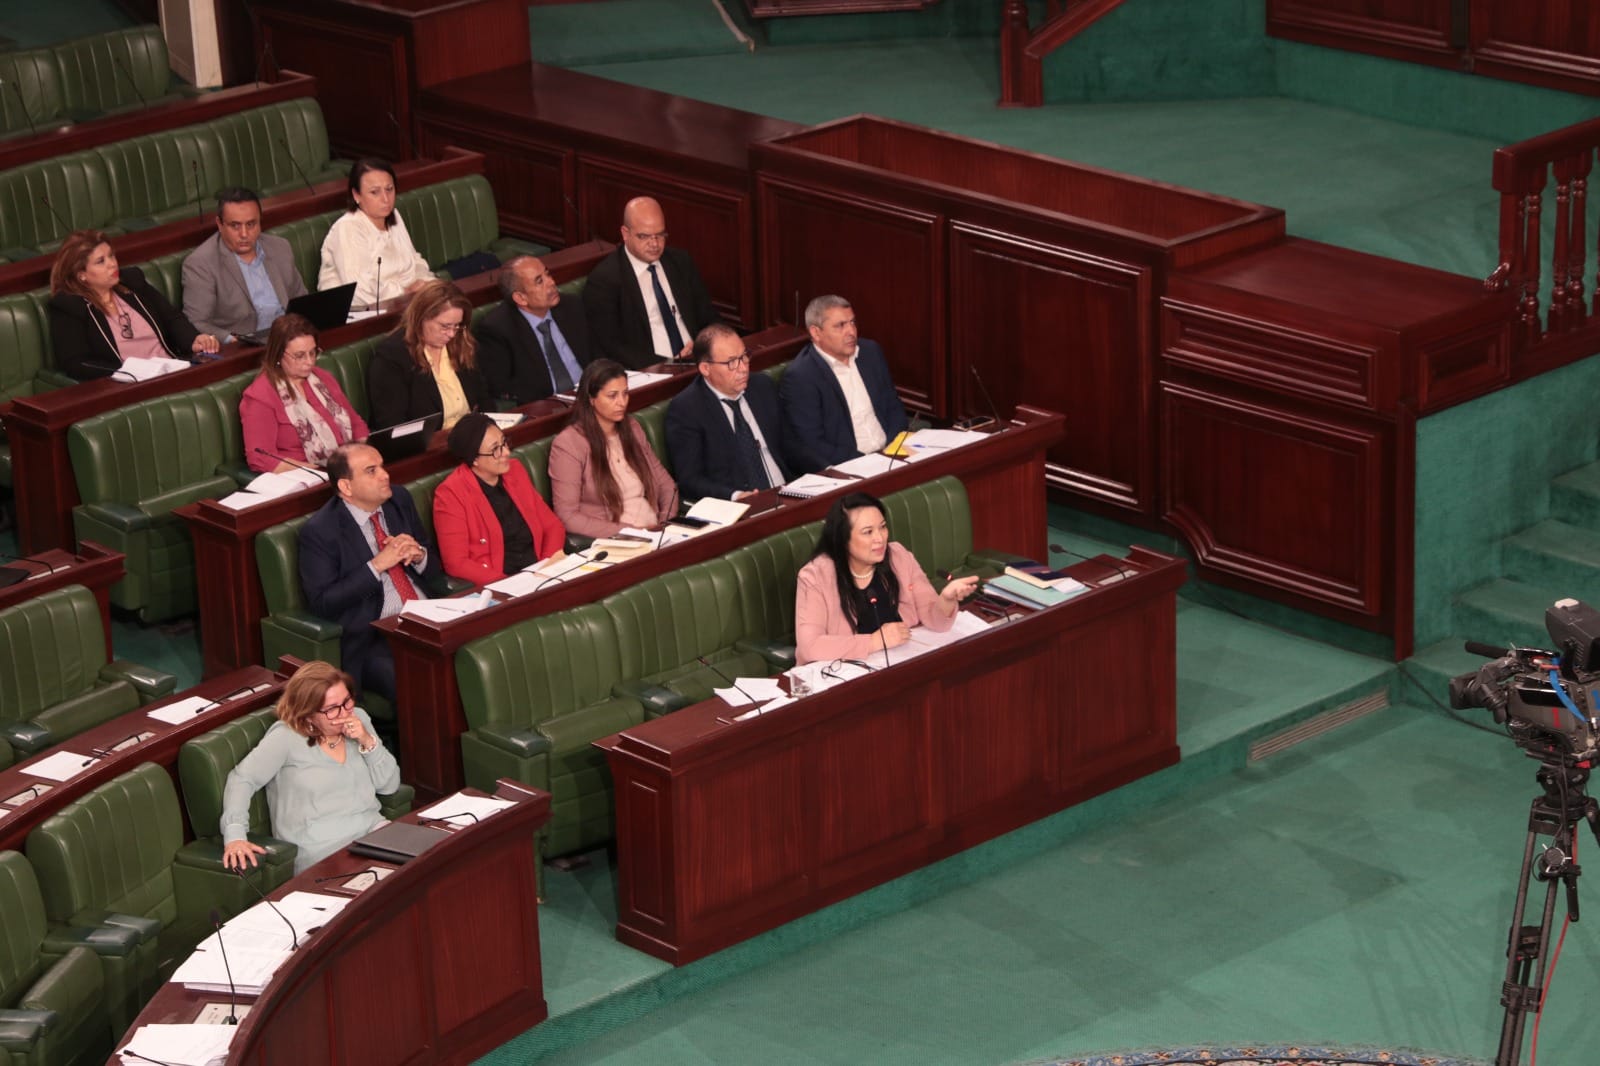 وزيرة الأسرة تؤكّد في البرلمان: "مسار 25 جويلية أعاد الاعتبار للدّور الاجتماعي للدّولة"